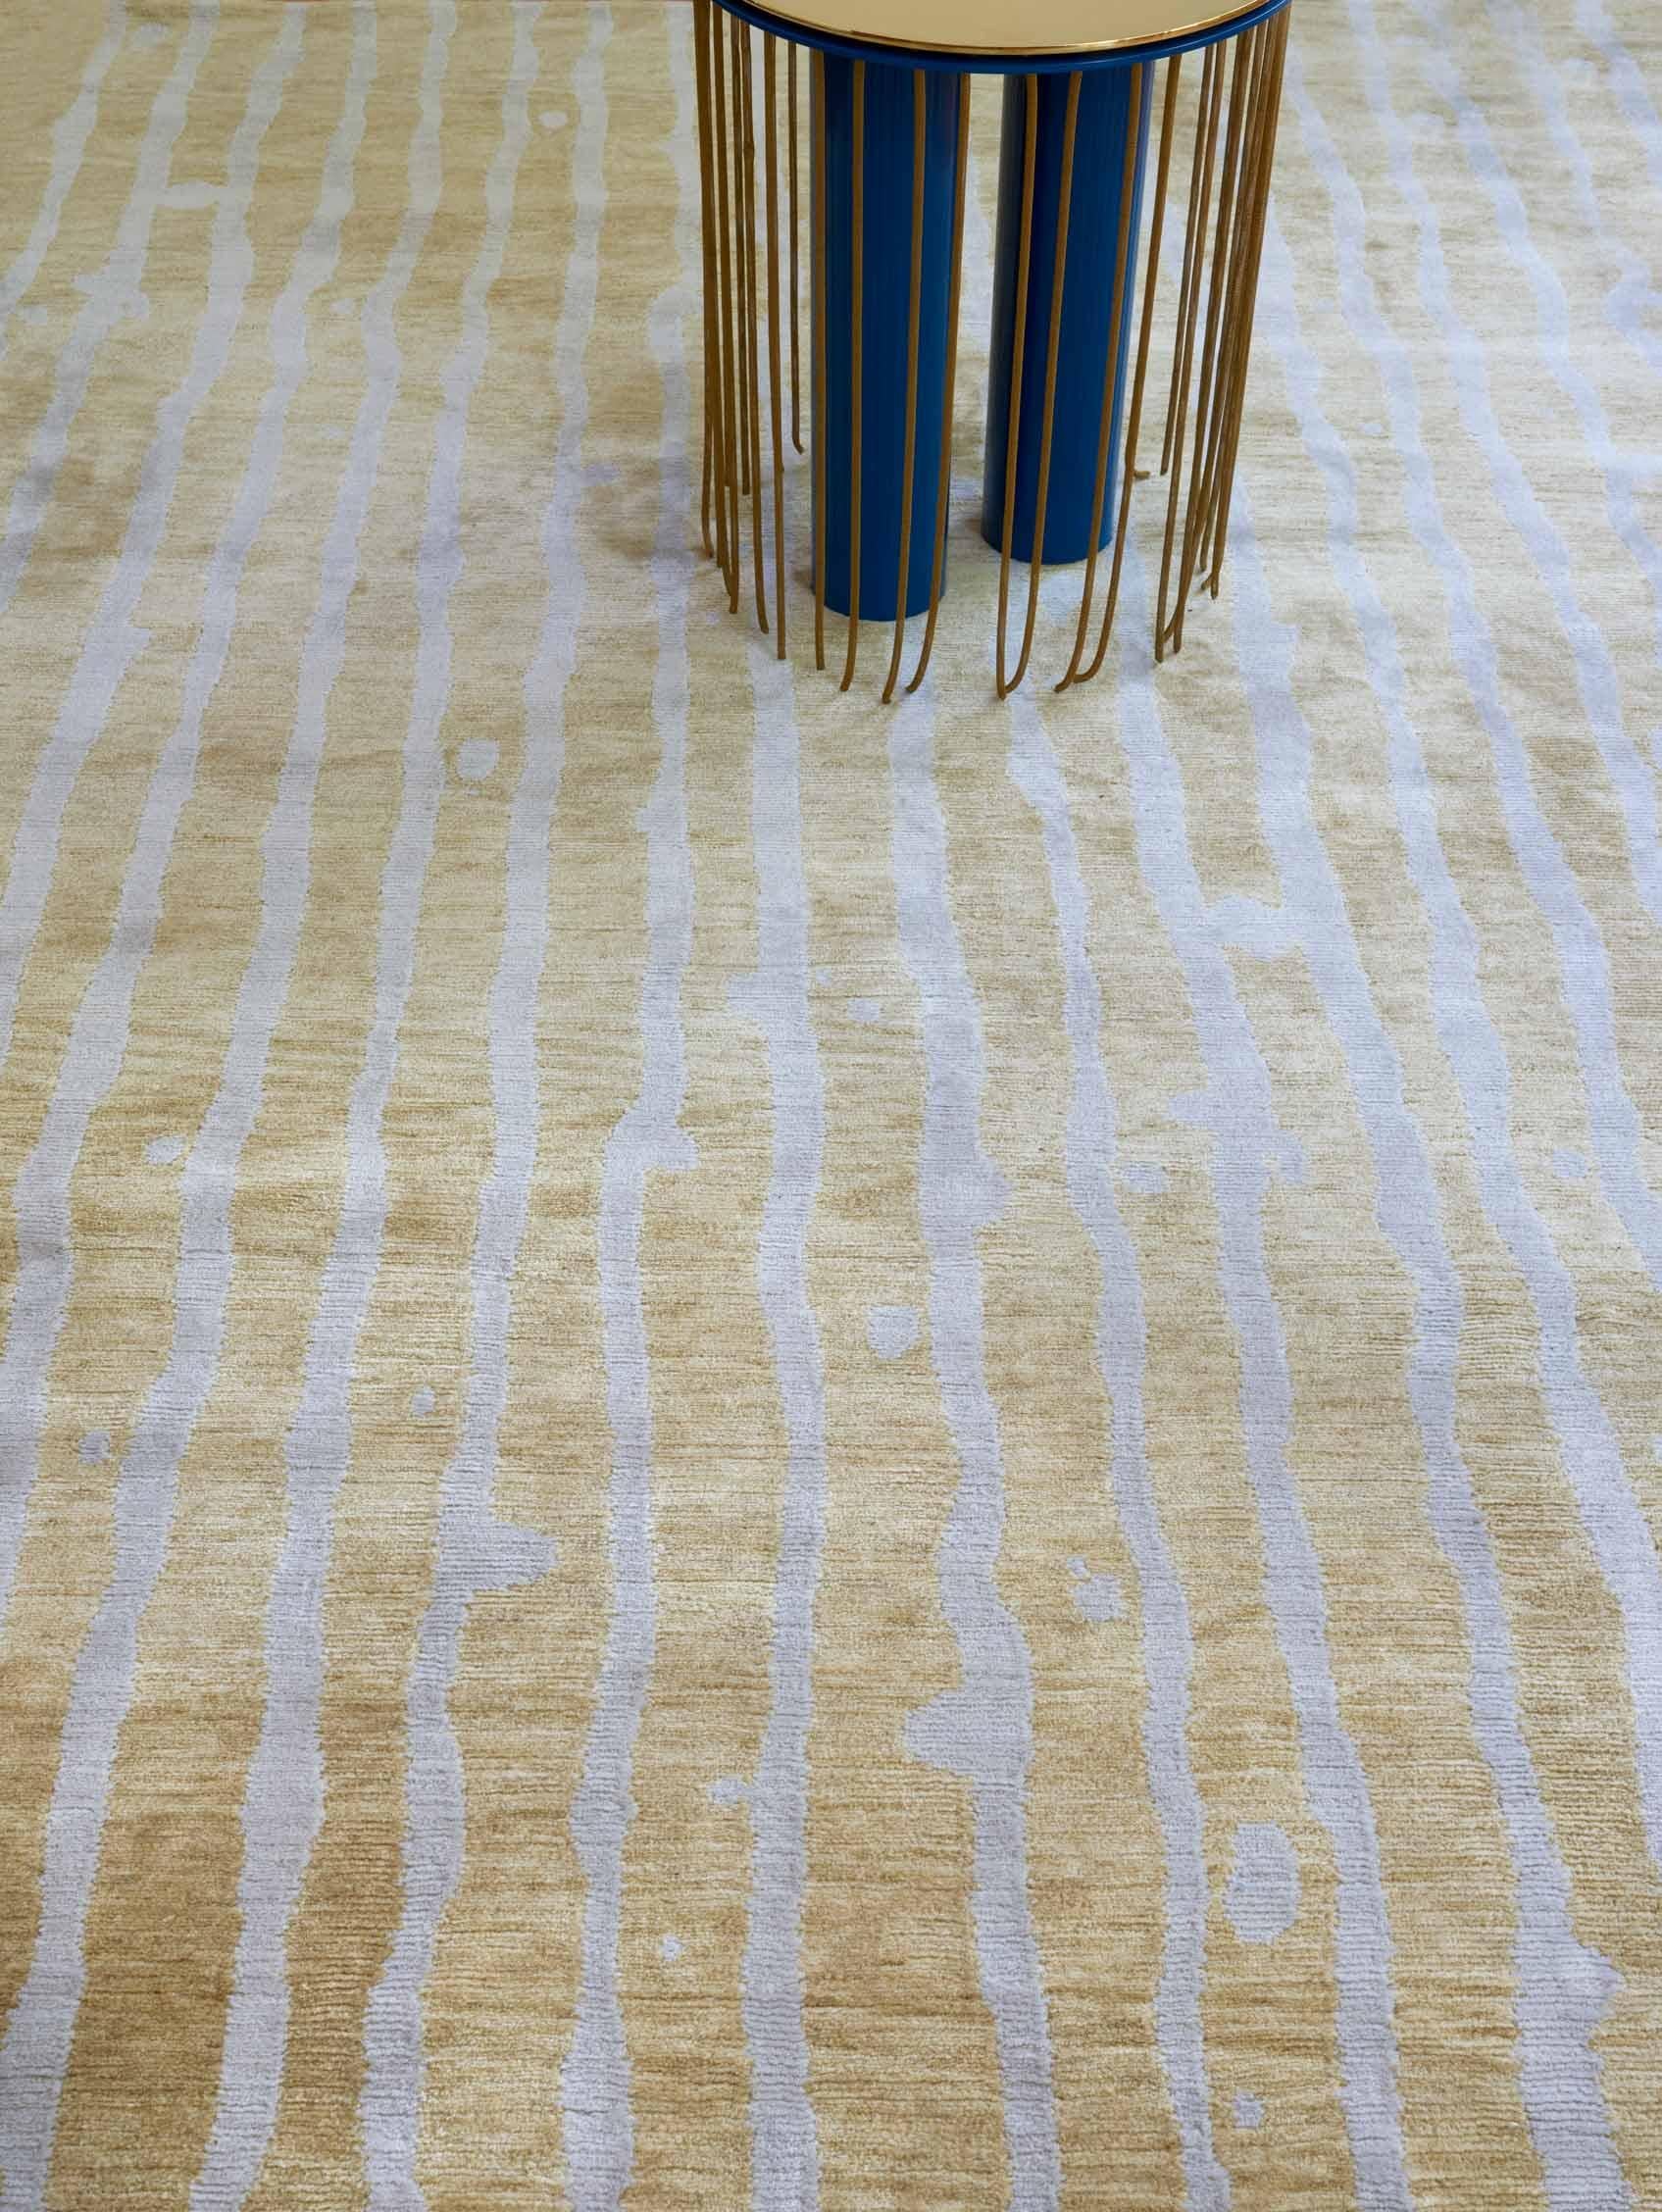 Motif du tapis : Drippy Stripe - Sage
MATERIAL : 100% laine mérinos
Qualité : Tissage croisé tibétain, tissé à la main 
Taille : 5'-0